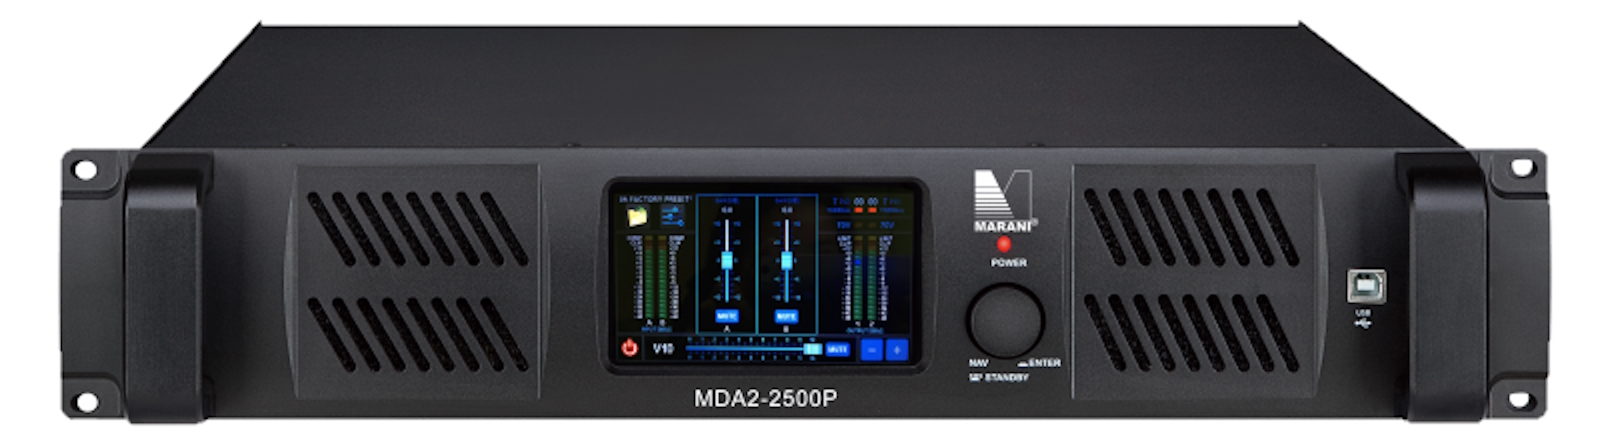 Усилители двухканальные Marani MDA2-2500P DANTE усилители двухканальные marani mda2 2500p dante